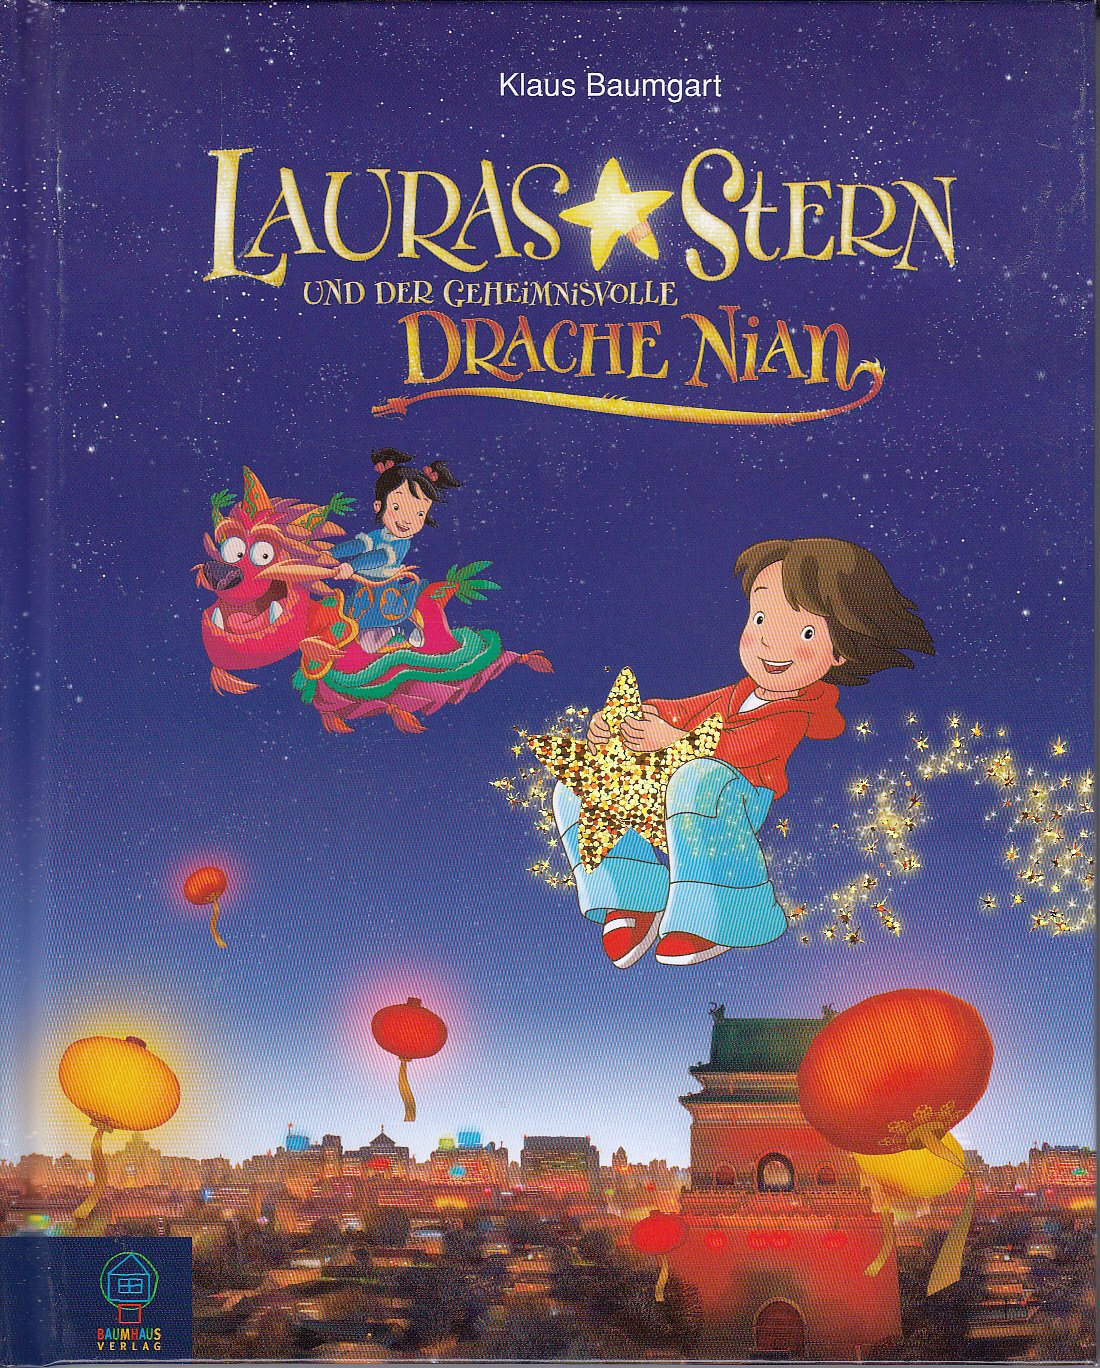 Lauras Stern und der geheimnisvolle Drache Nian